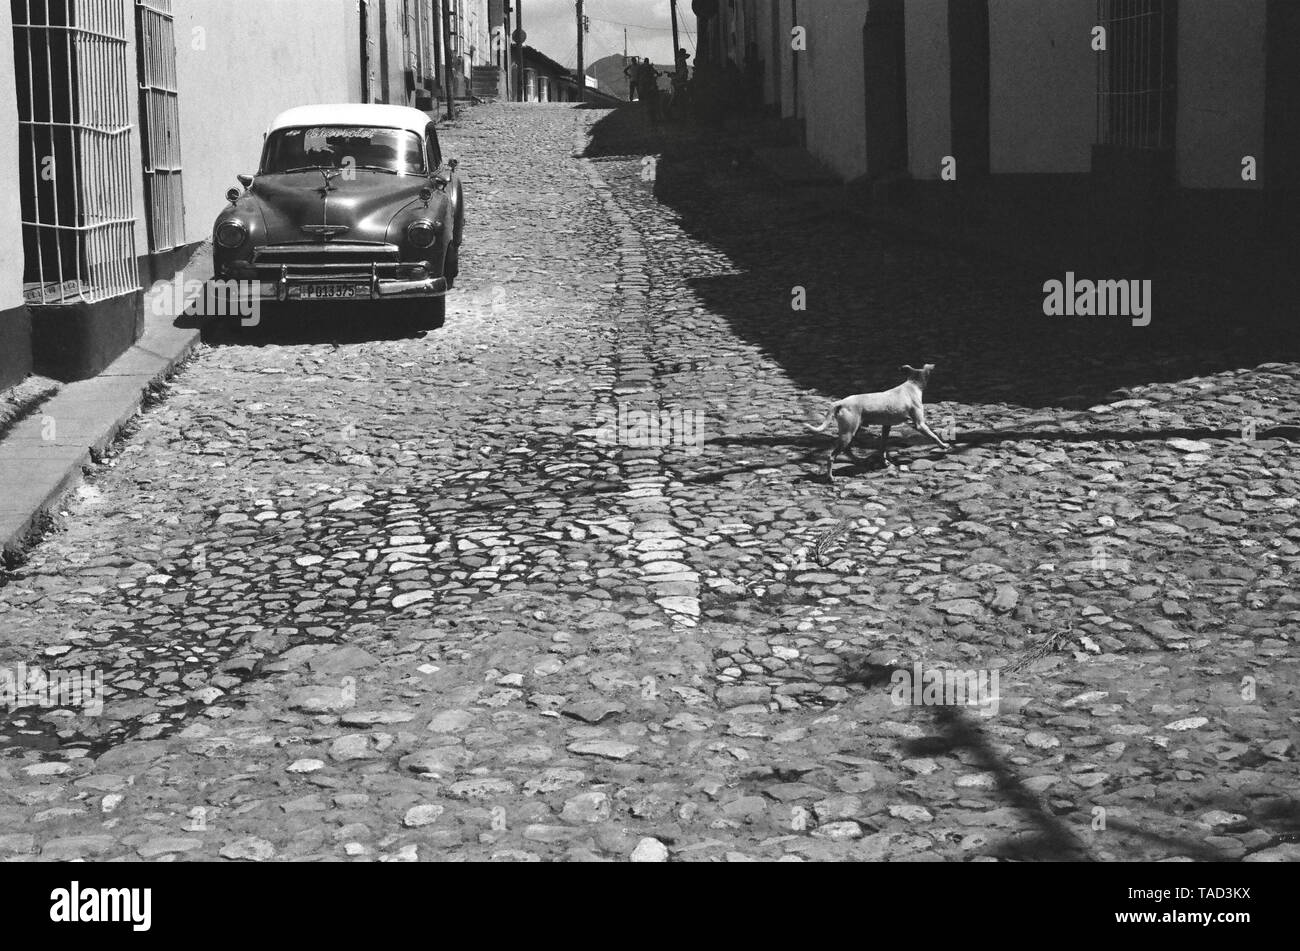 A dog runs across a road in Trinidad, Cuba Stock Photo